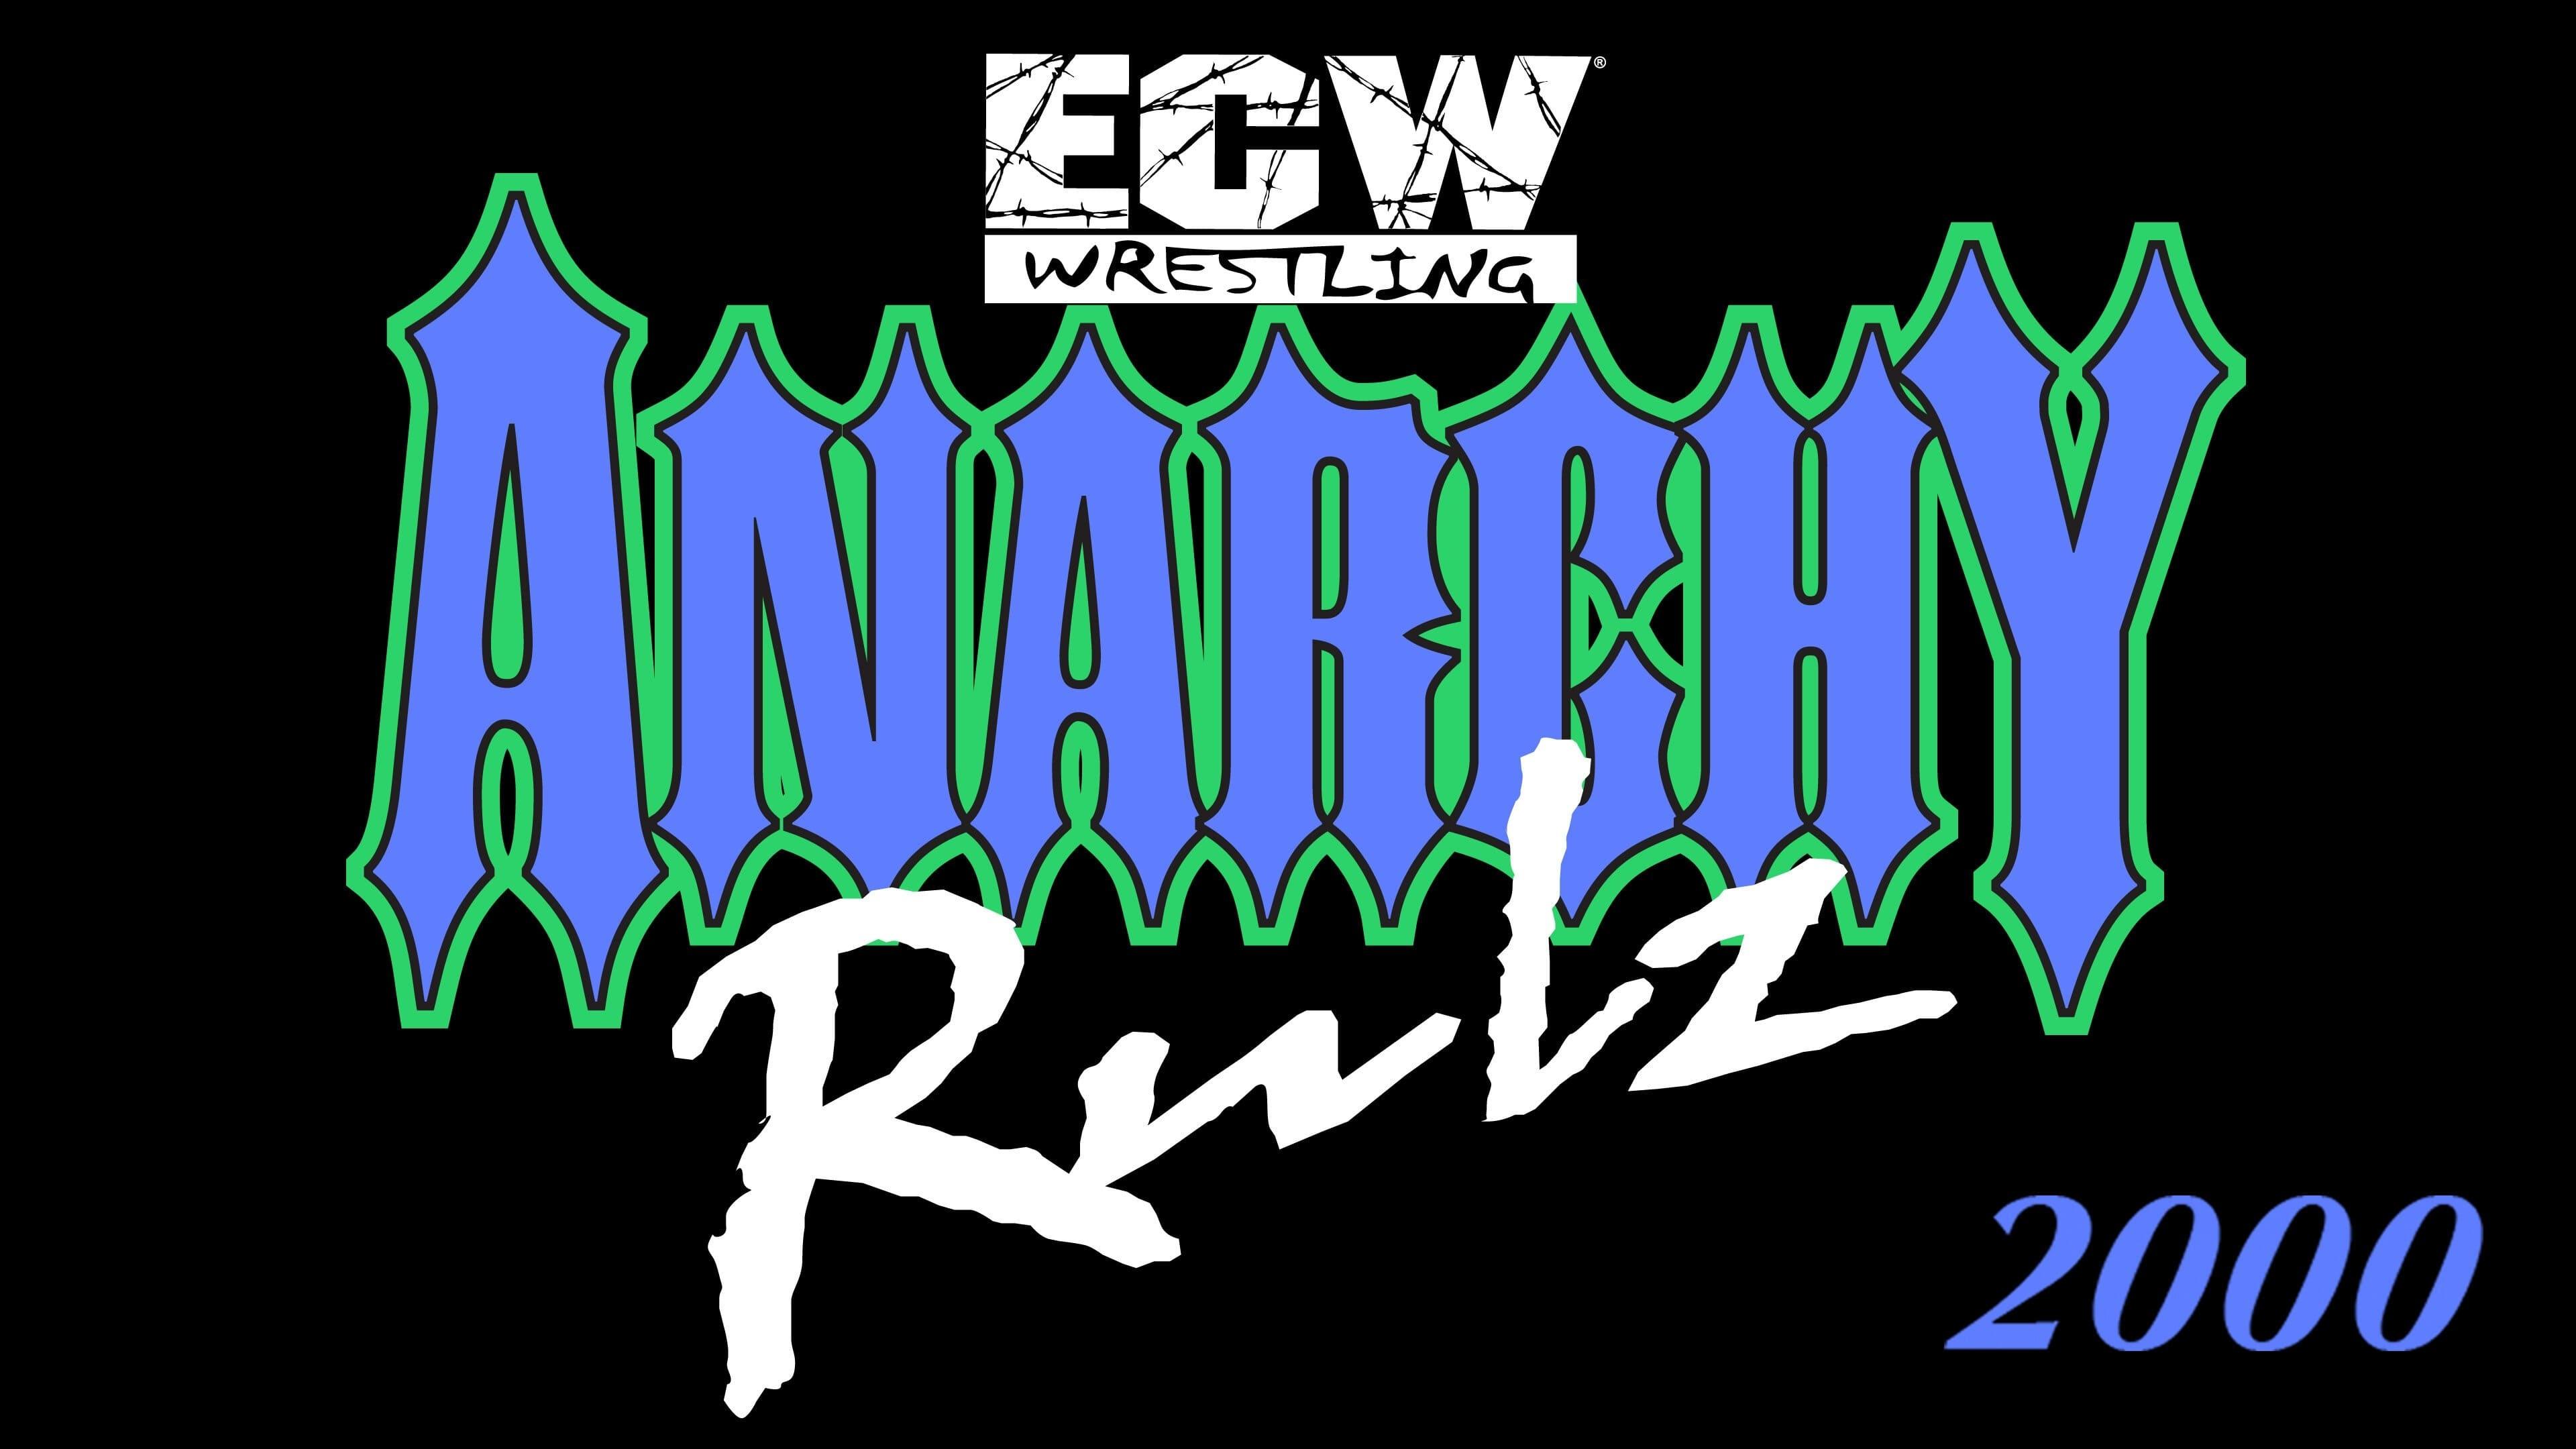 ECW Anarchy Rulz 2000 backdrop